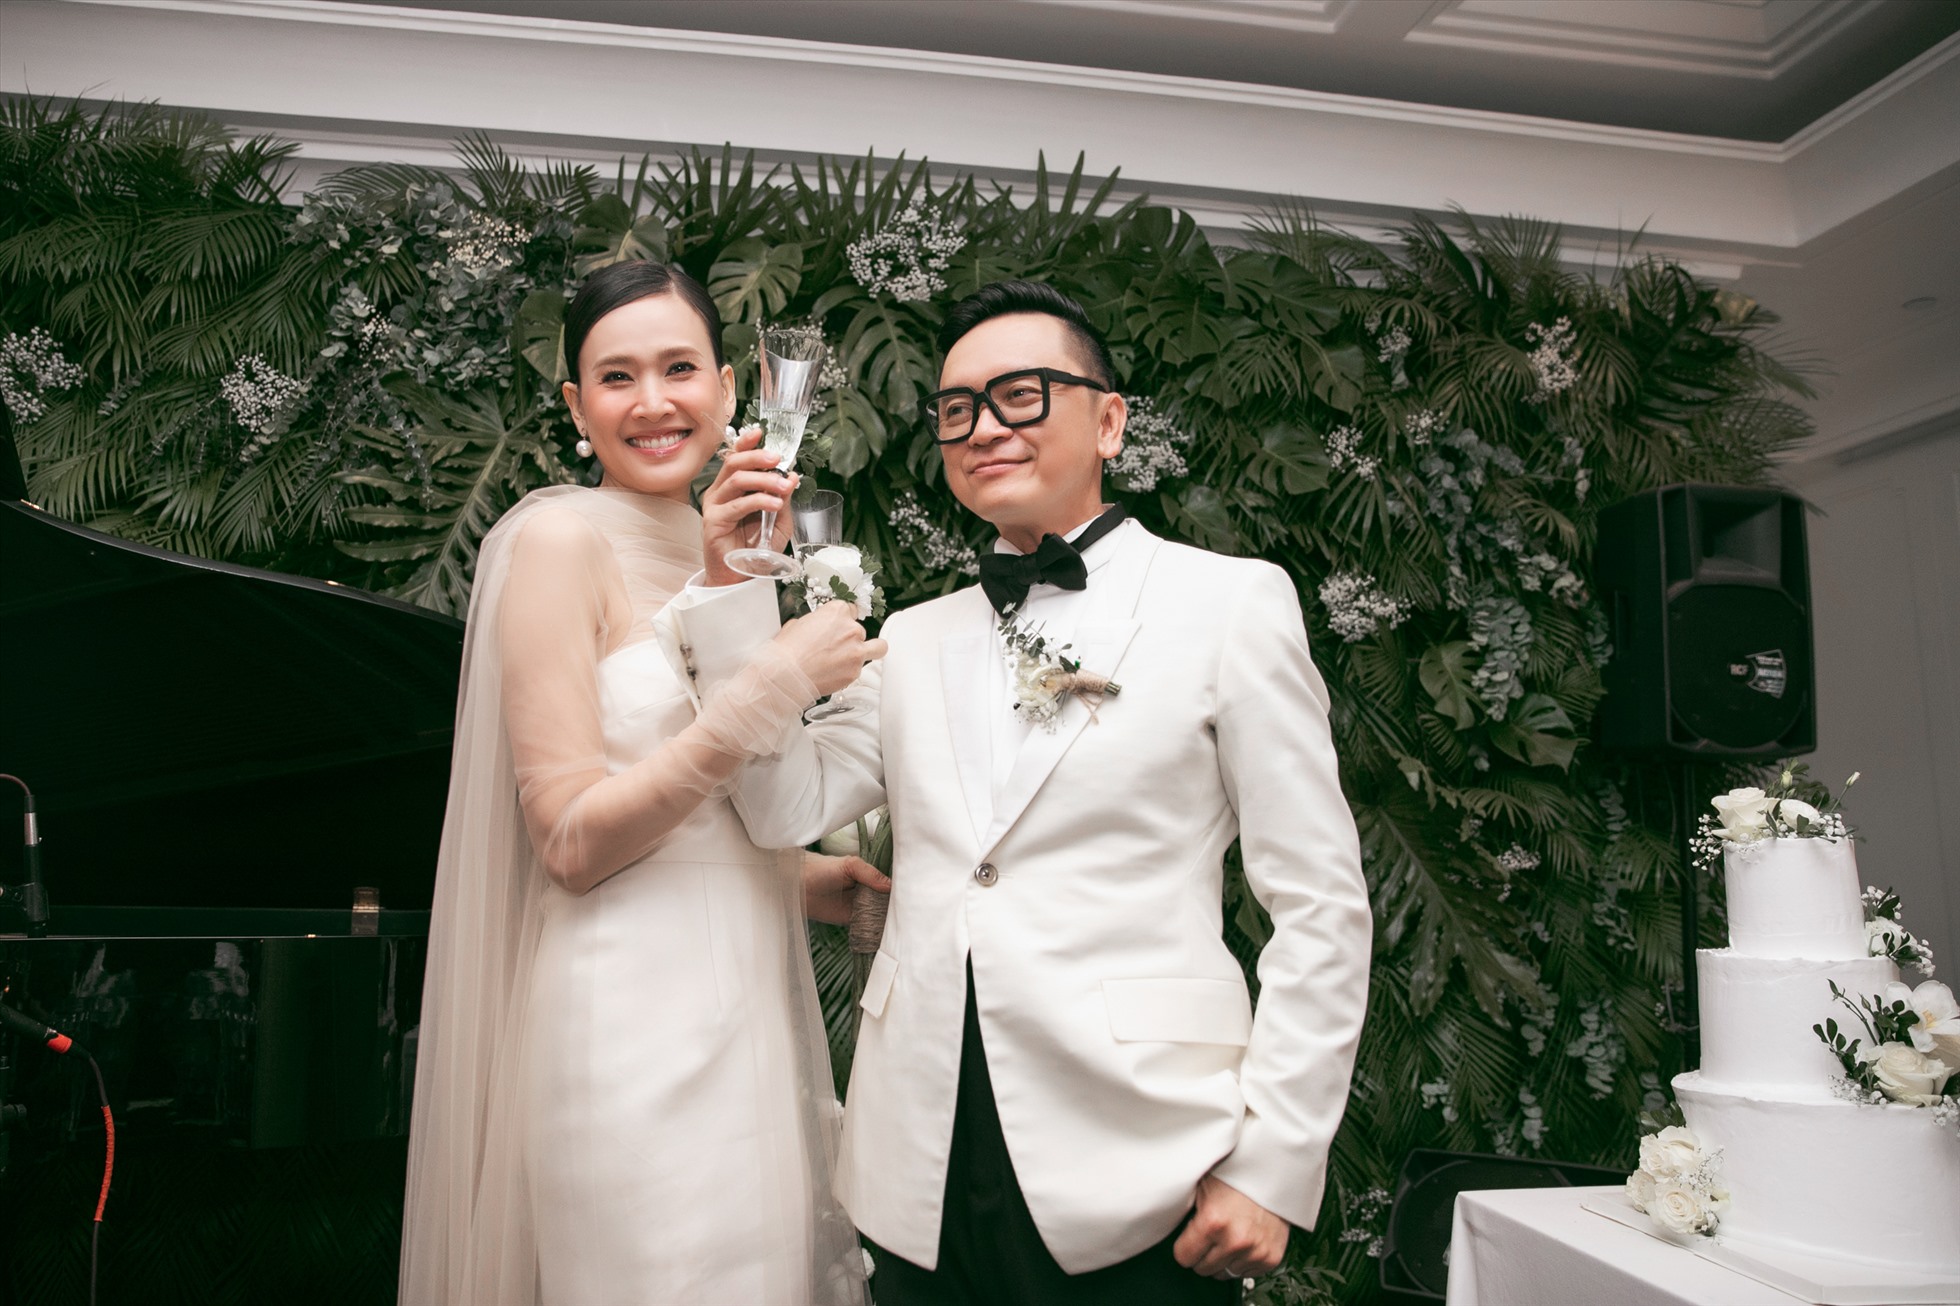 Sau 4 năm tìm hiểu, Hoa hậu Dương Mỹ Linh và ông xã Tôn Thất Bảo Anh chính thức về chung một nhà. Ảnh: Kiếng Cận